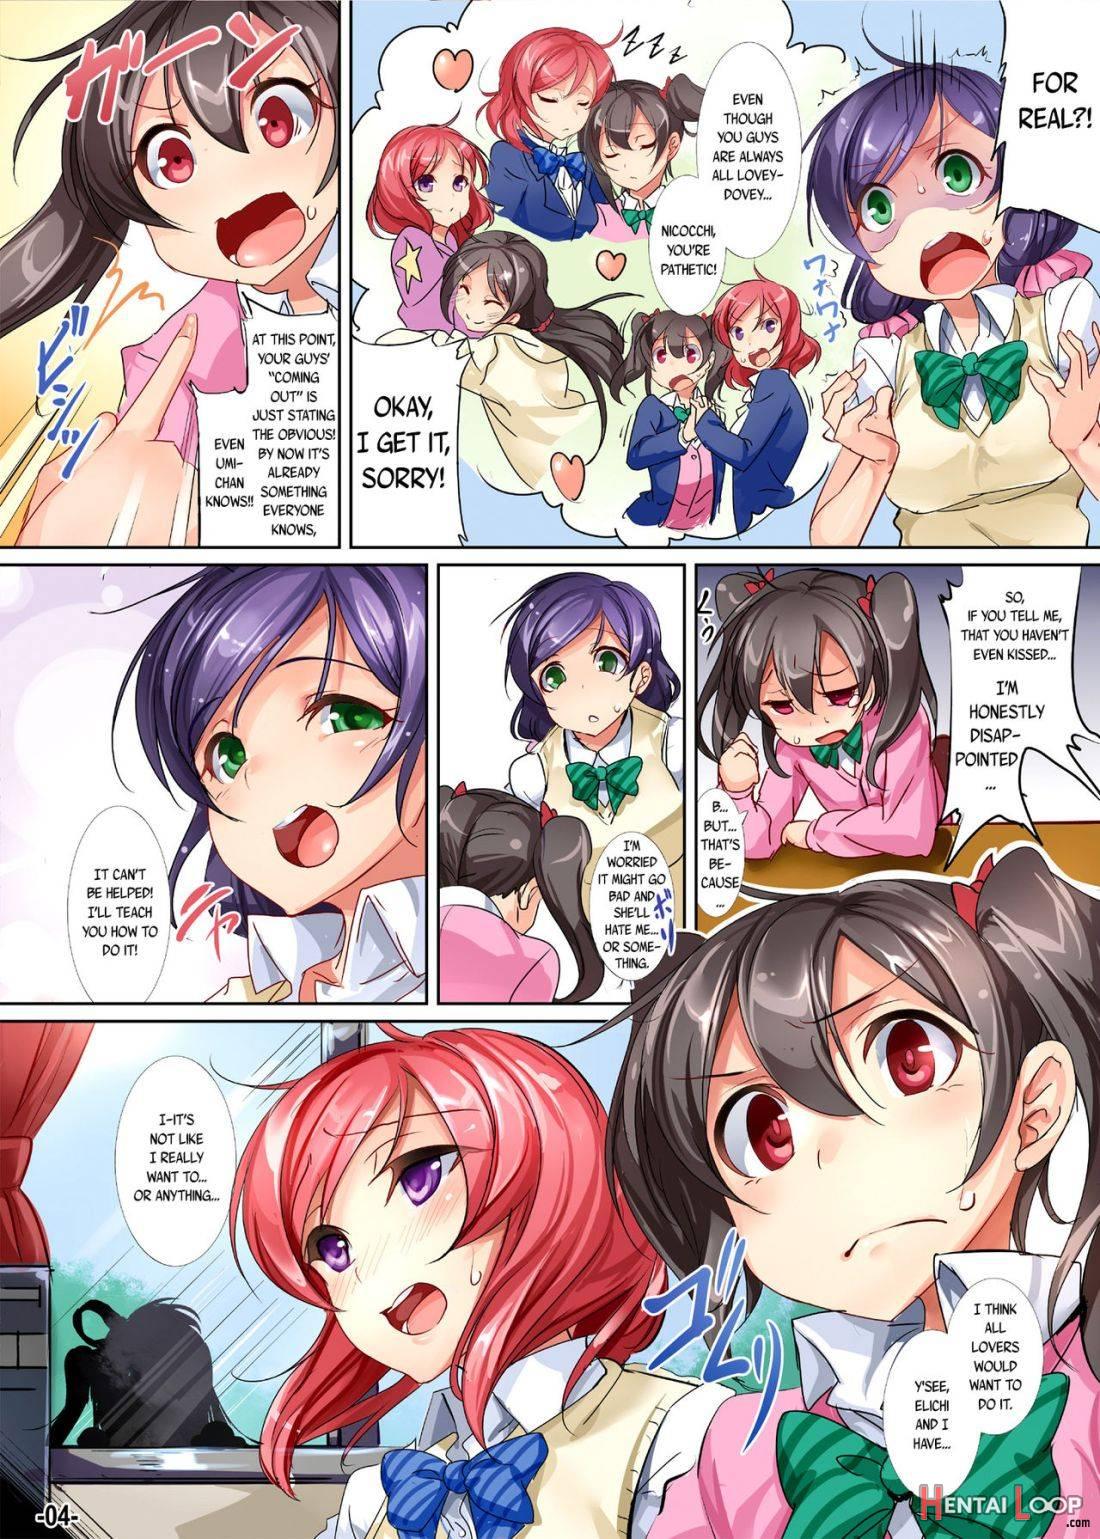 Yuri Girls Project page 3